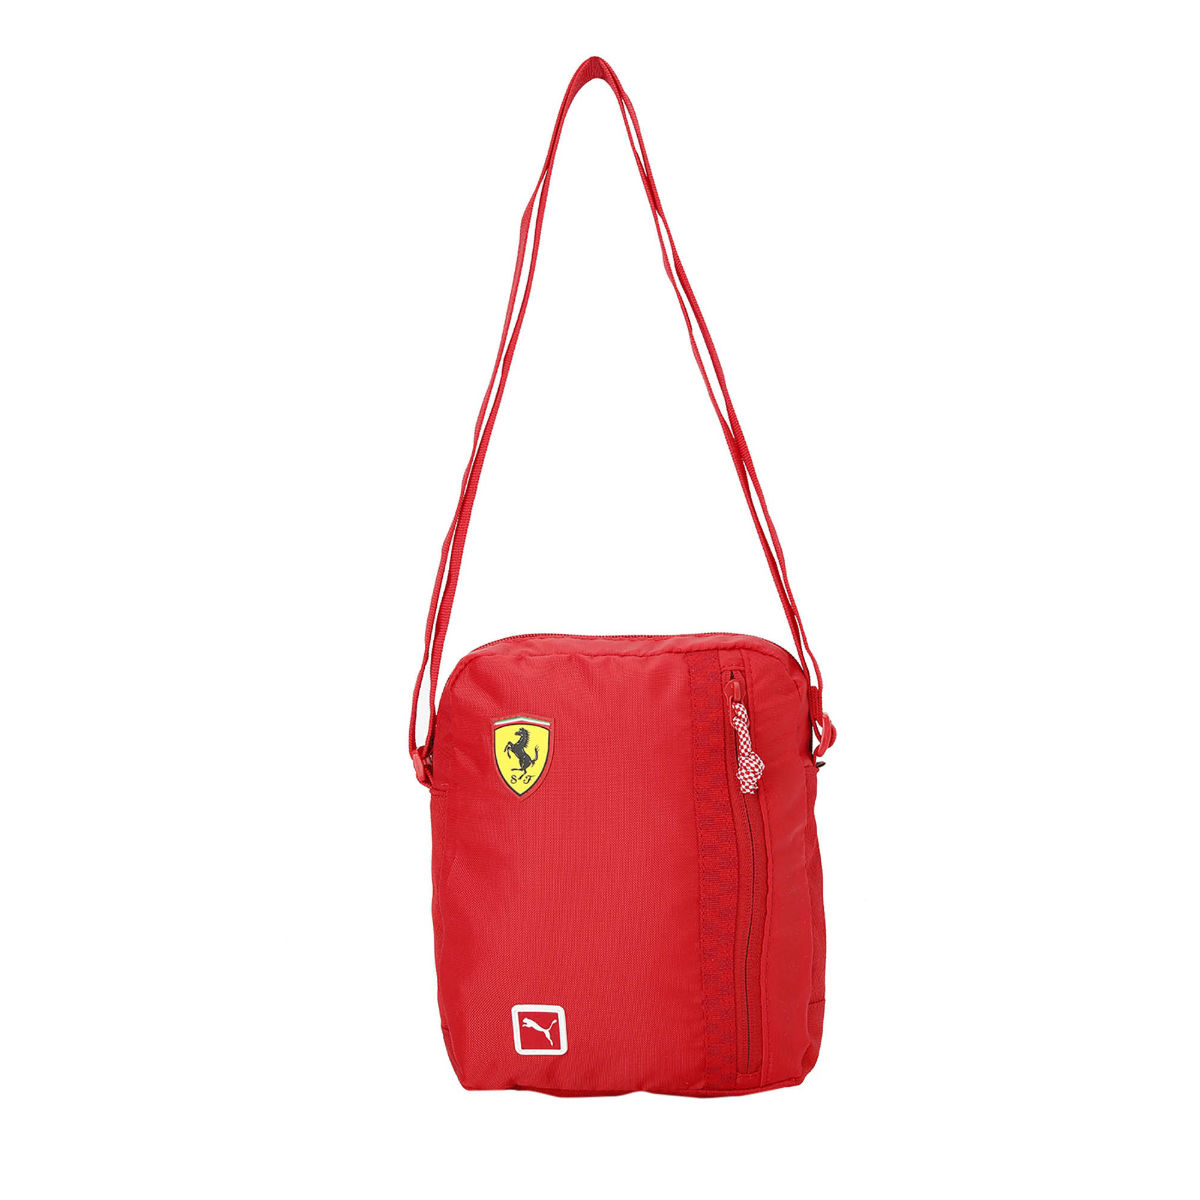 Scuderia Ferrari Lifestyle Women's Handbag | PUMA Shop All Puma | PUMA